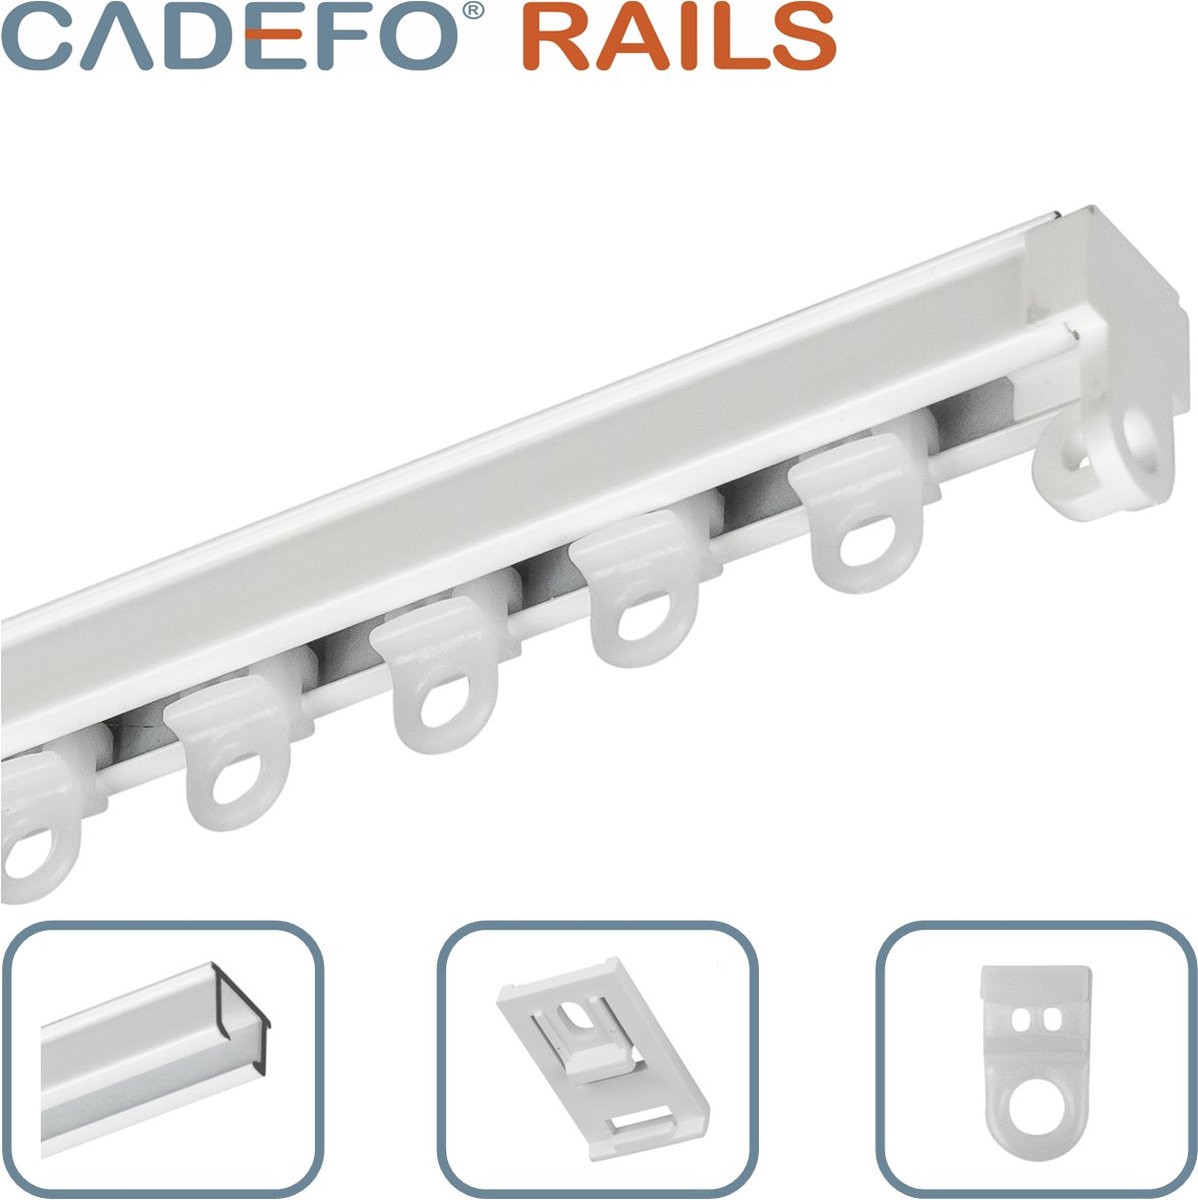 CADEFO RAILS (501 - 550 cm) Gordijnrails - Compleet op maat! - UIT 1 STUK - Leverbaar tot 6 meter - Plafondbevestiging - Lengte 541 cm